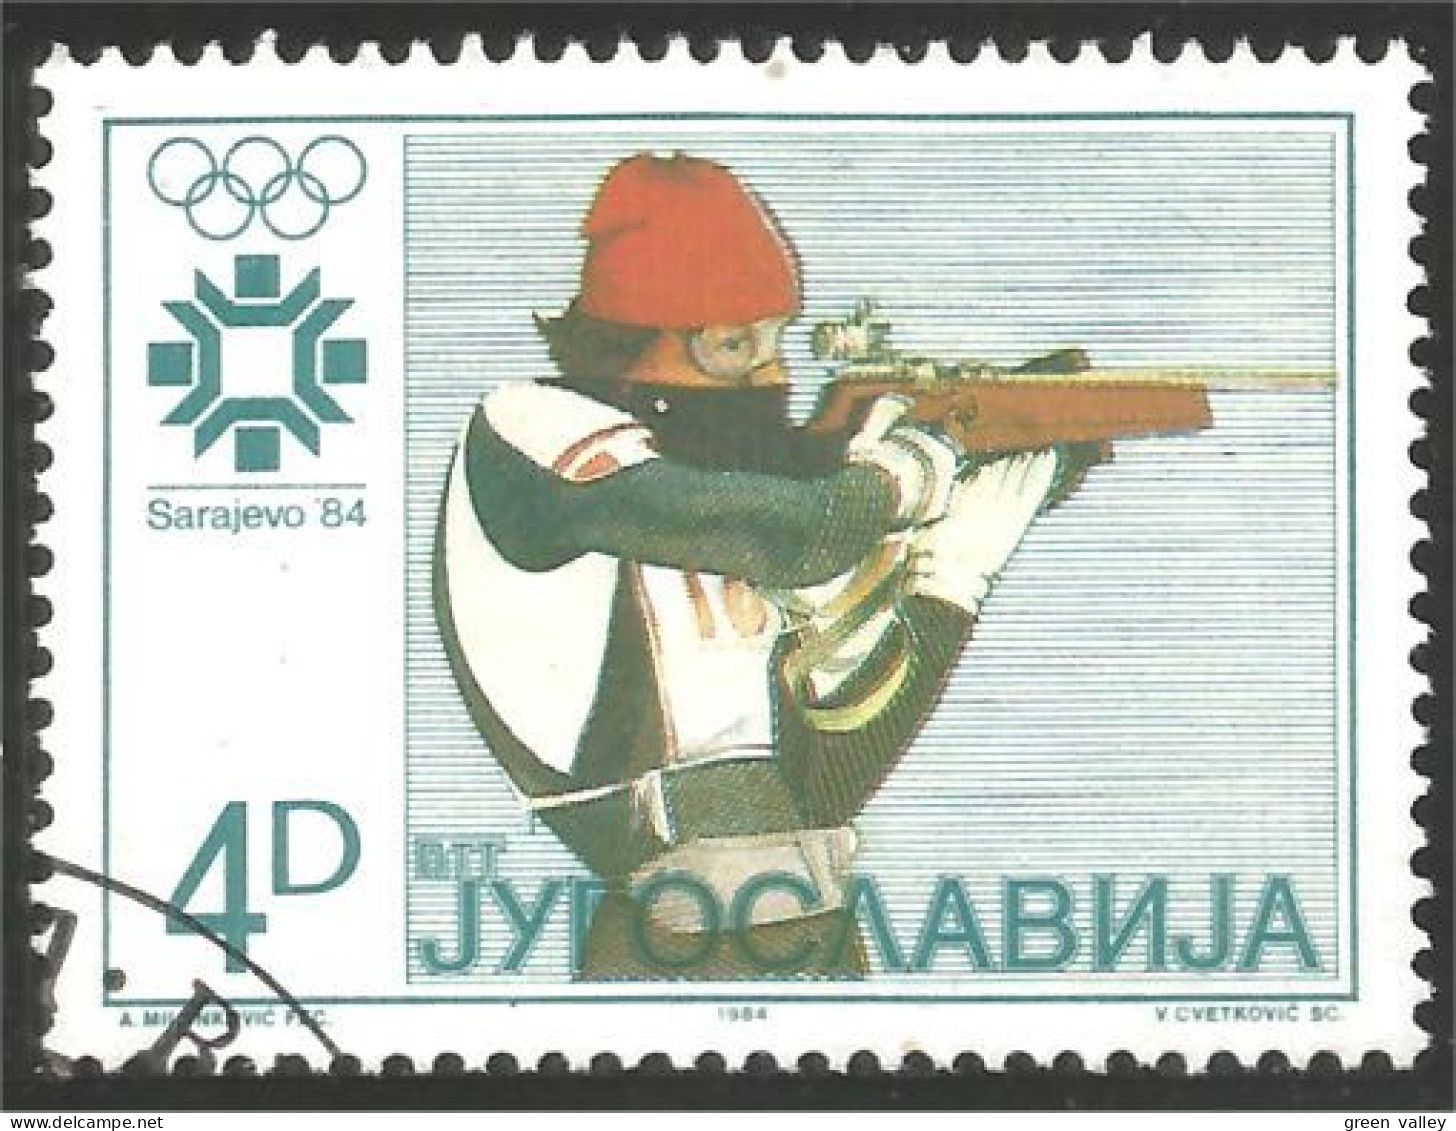 XW01-2127 Yougoslavie Sarajevo 1984 Tir Arme Arms Shooting Biathlon - Tiro (armas)